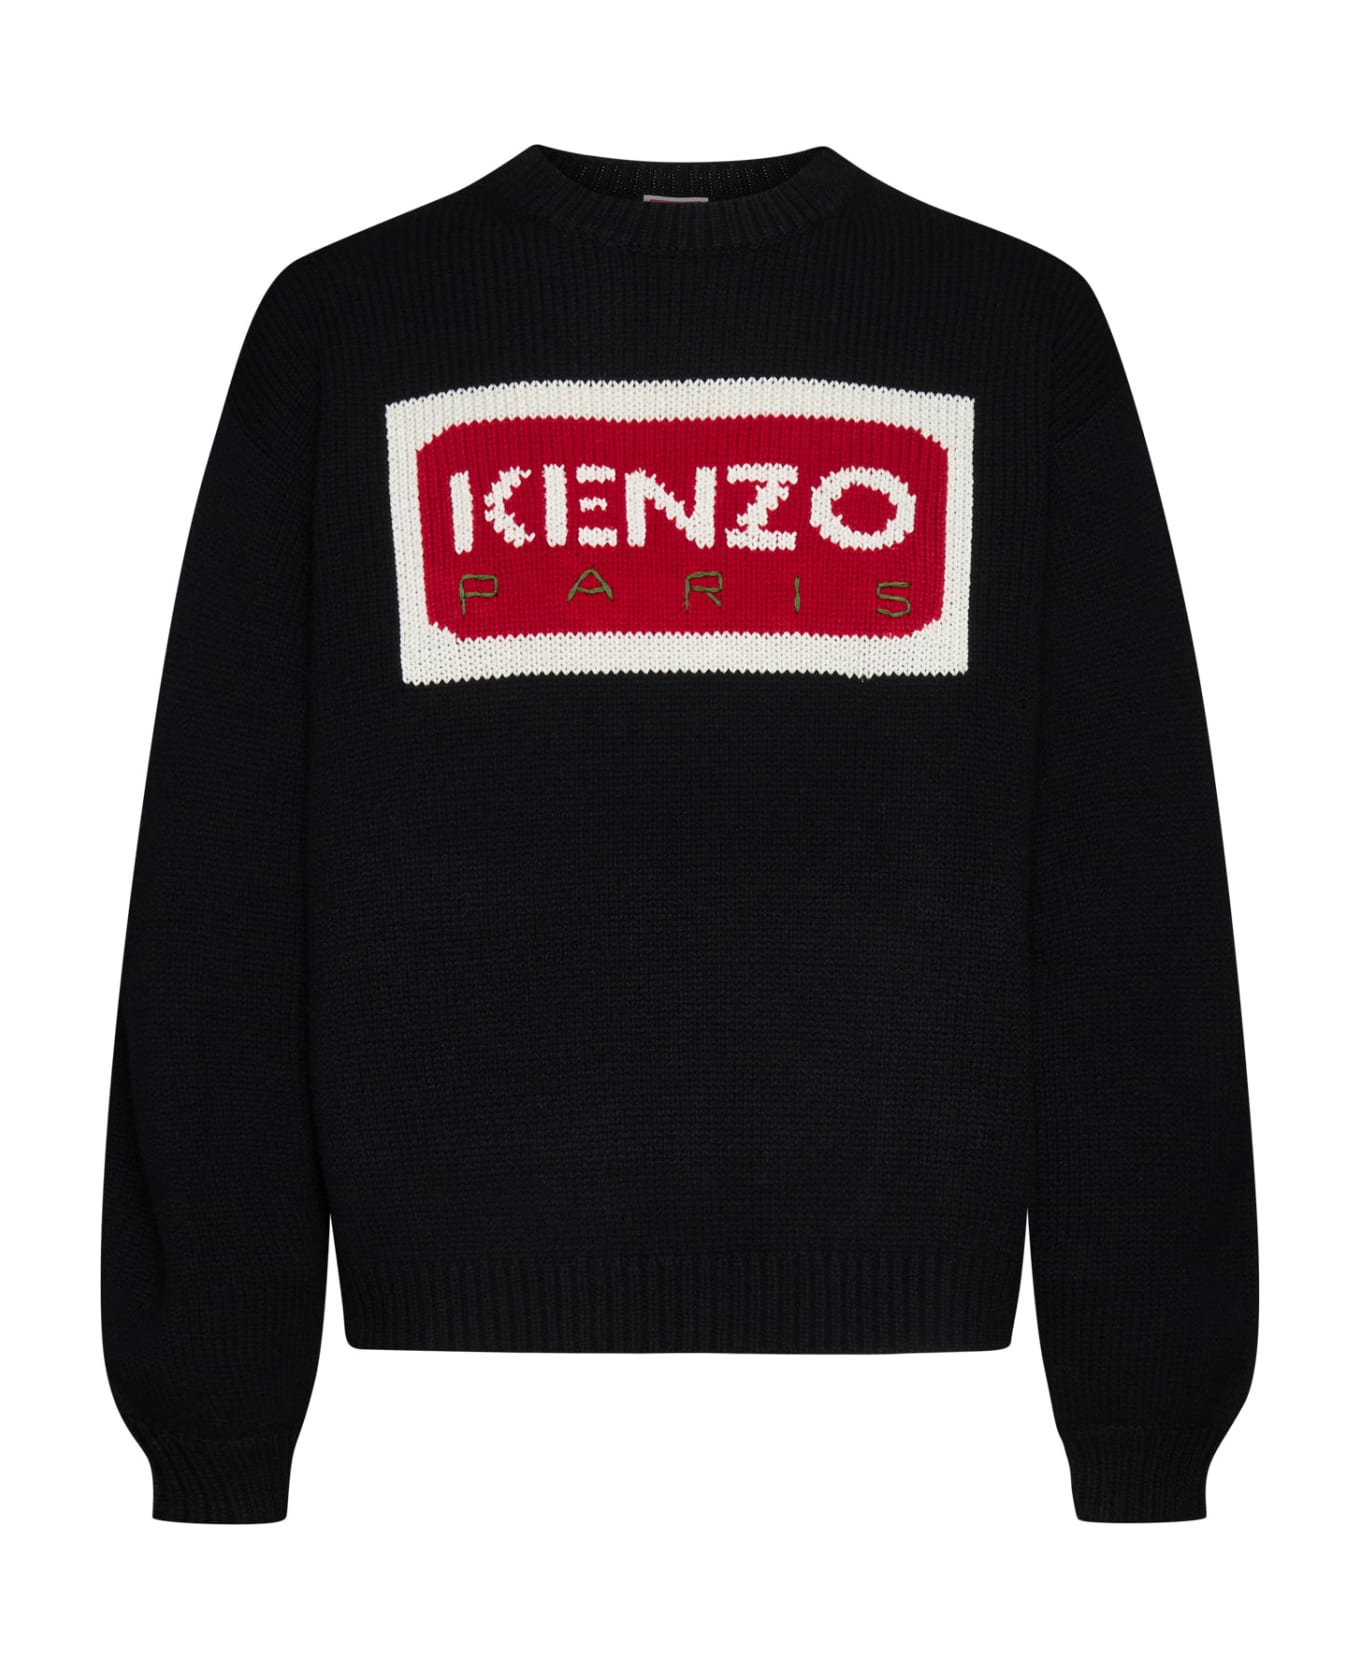 Kenzo Crew-neck Sweater - J Black ニットウェア